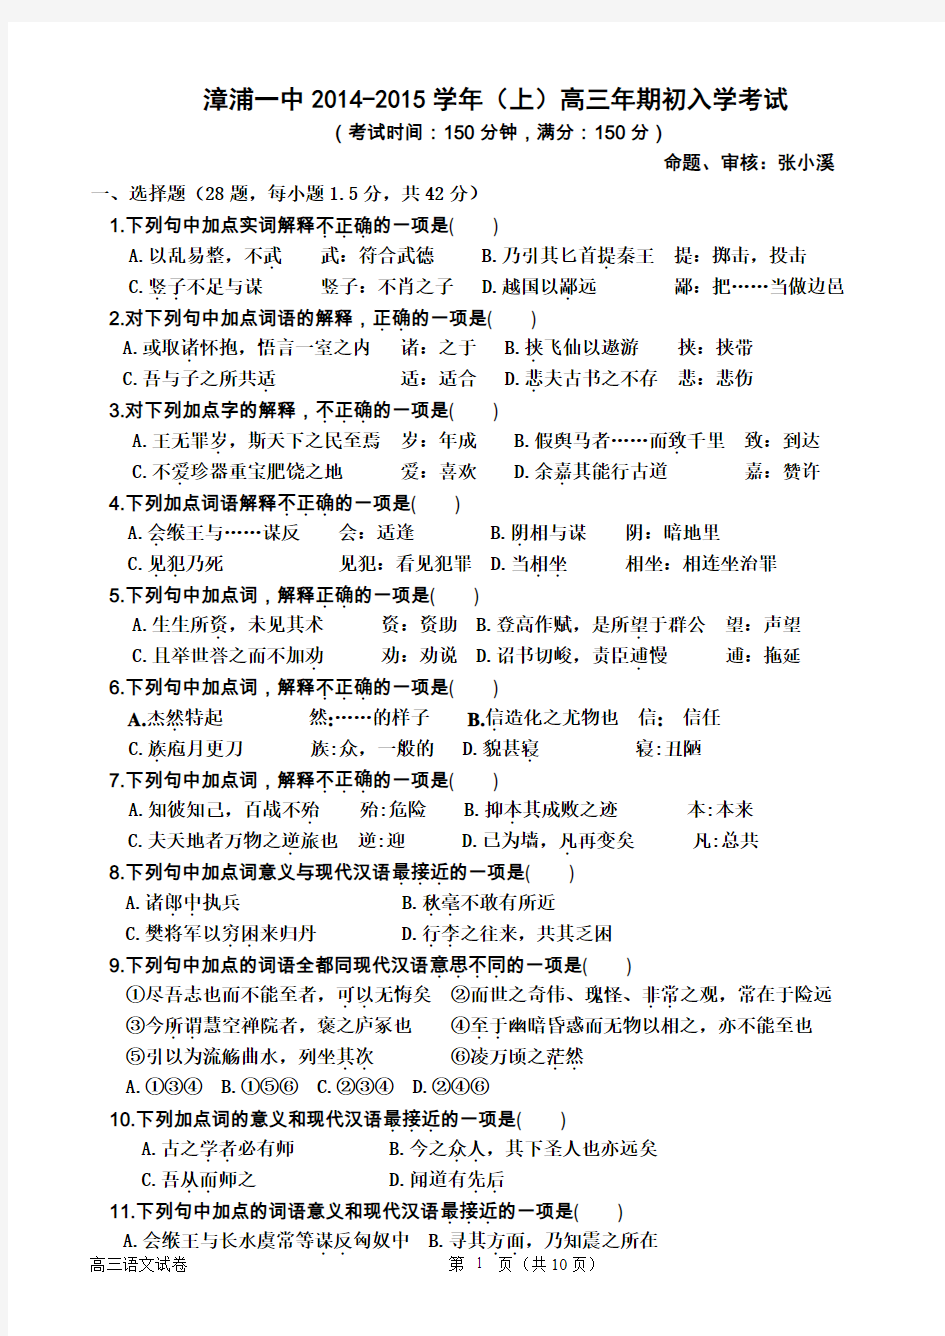 漳浦一中2014-2015学年(上)高三年期初入学考试(学生版)(DOC)